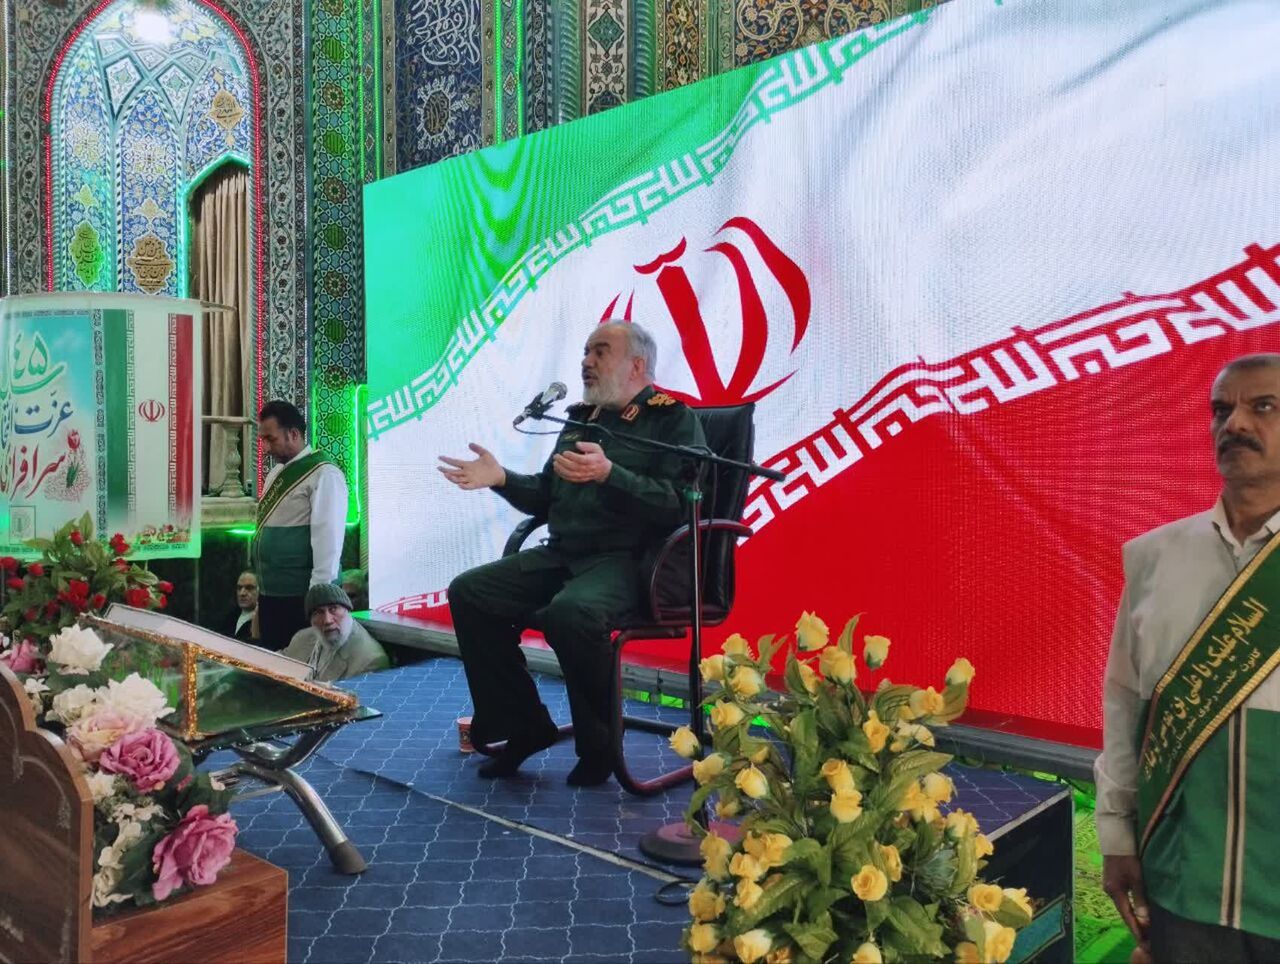 سردار فدوی : مردم ایران باحضور پرشور درانتخابات شکست دیگری را به دشمن تحمیل می کنند